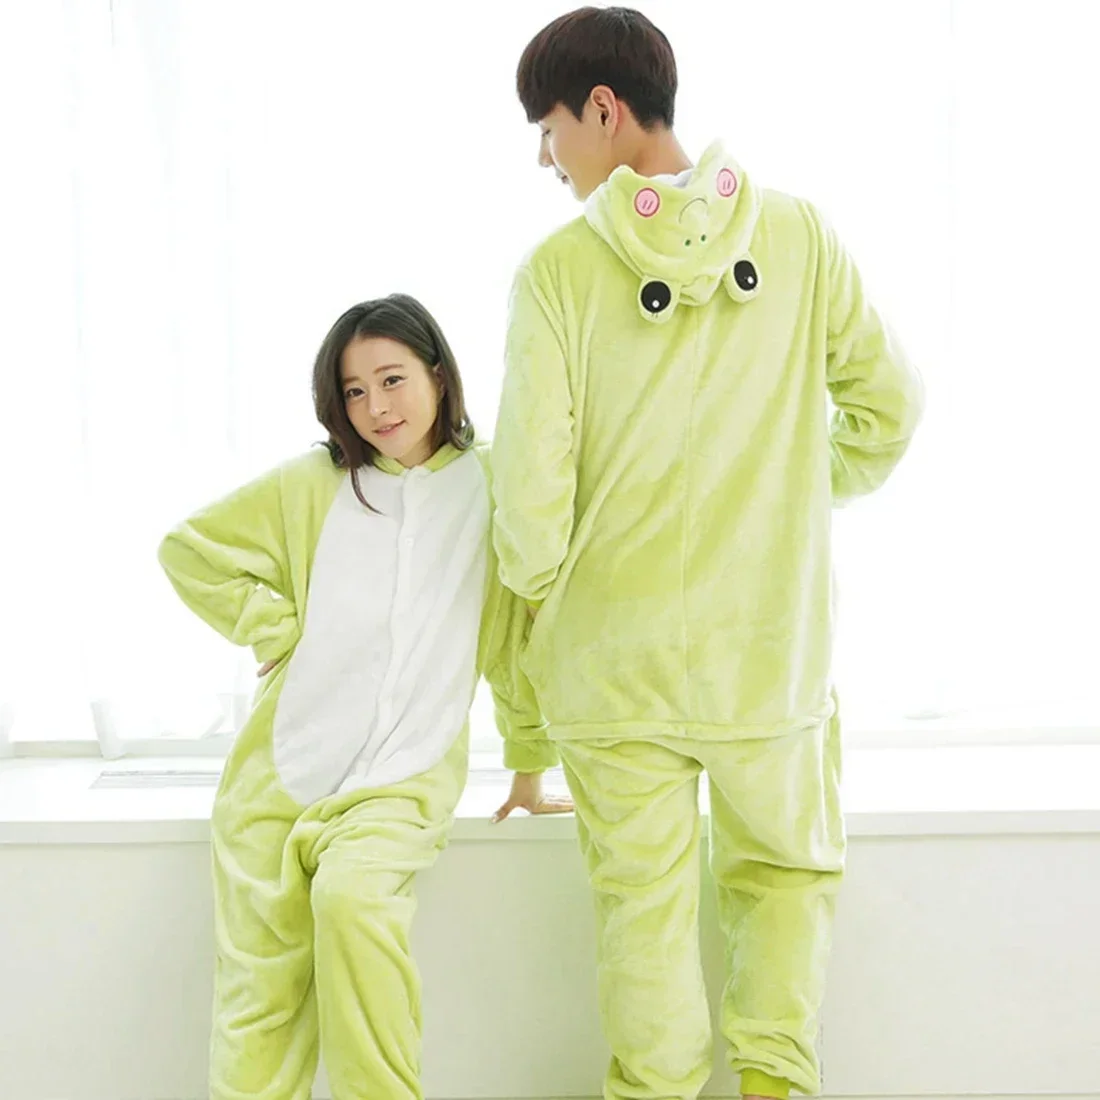 

Зеленая лягушка Kigurumis, Женская милая пижама в виде животного, мультяшный комбинезон, зимний теплый мягкий фланелевый костюм, домашняя одежда, одежда для сна